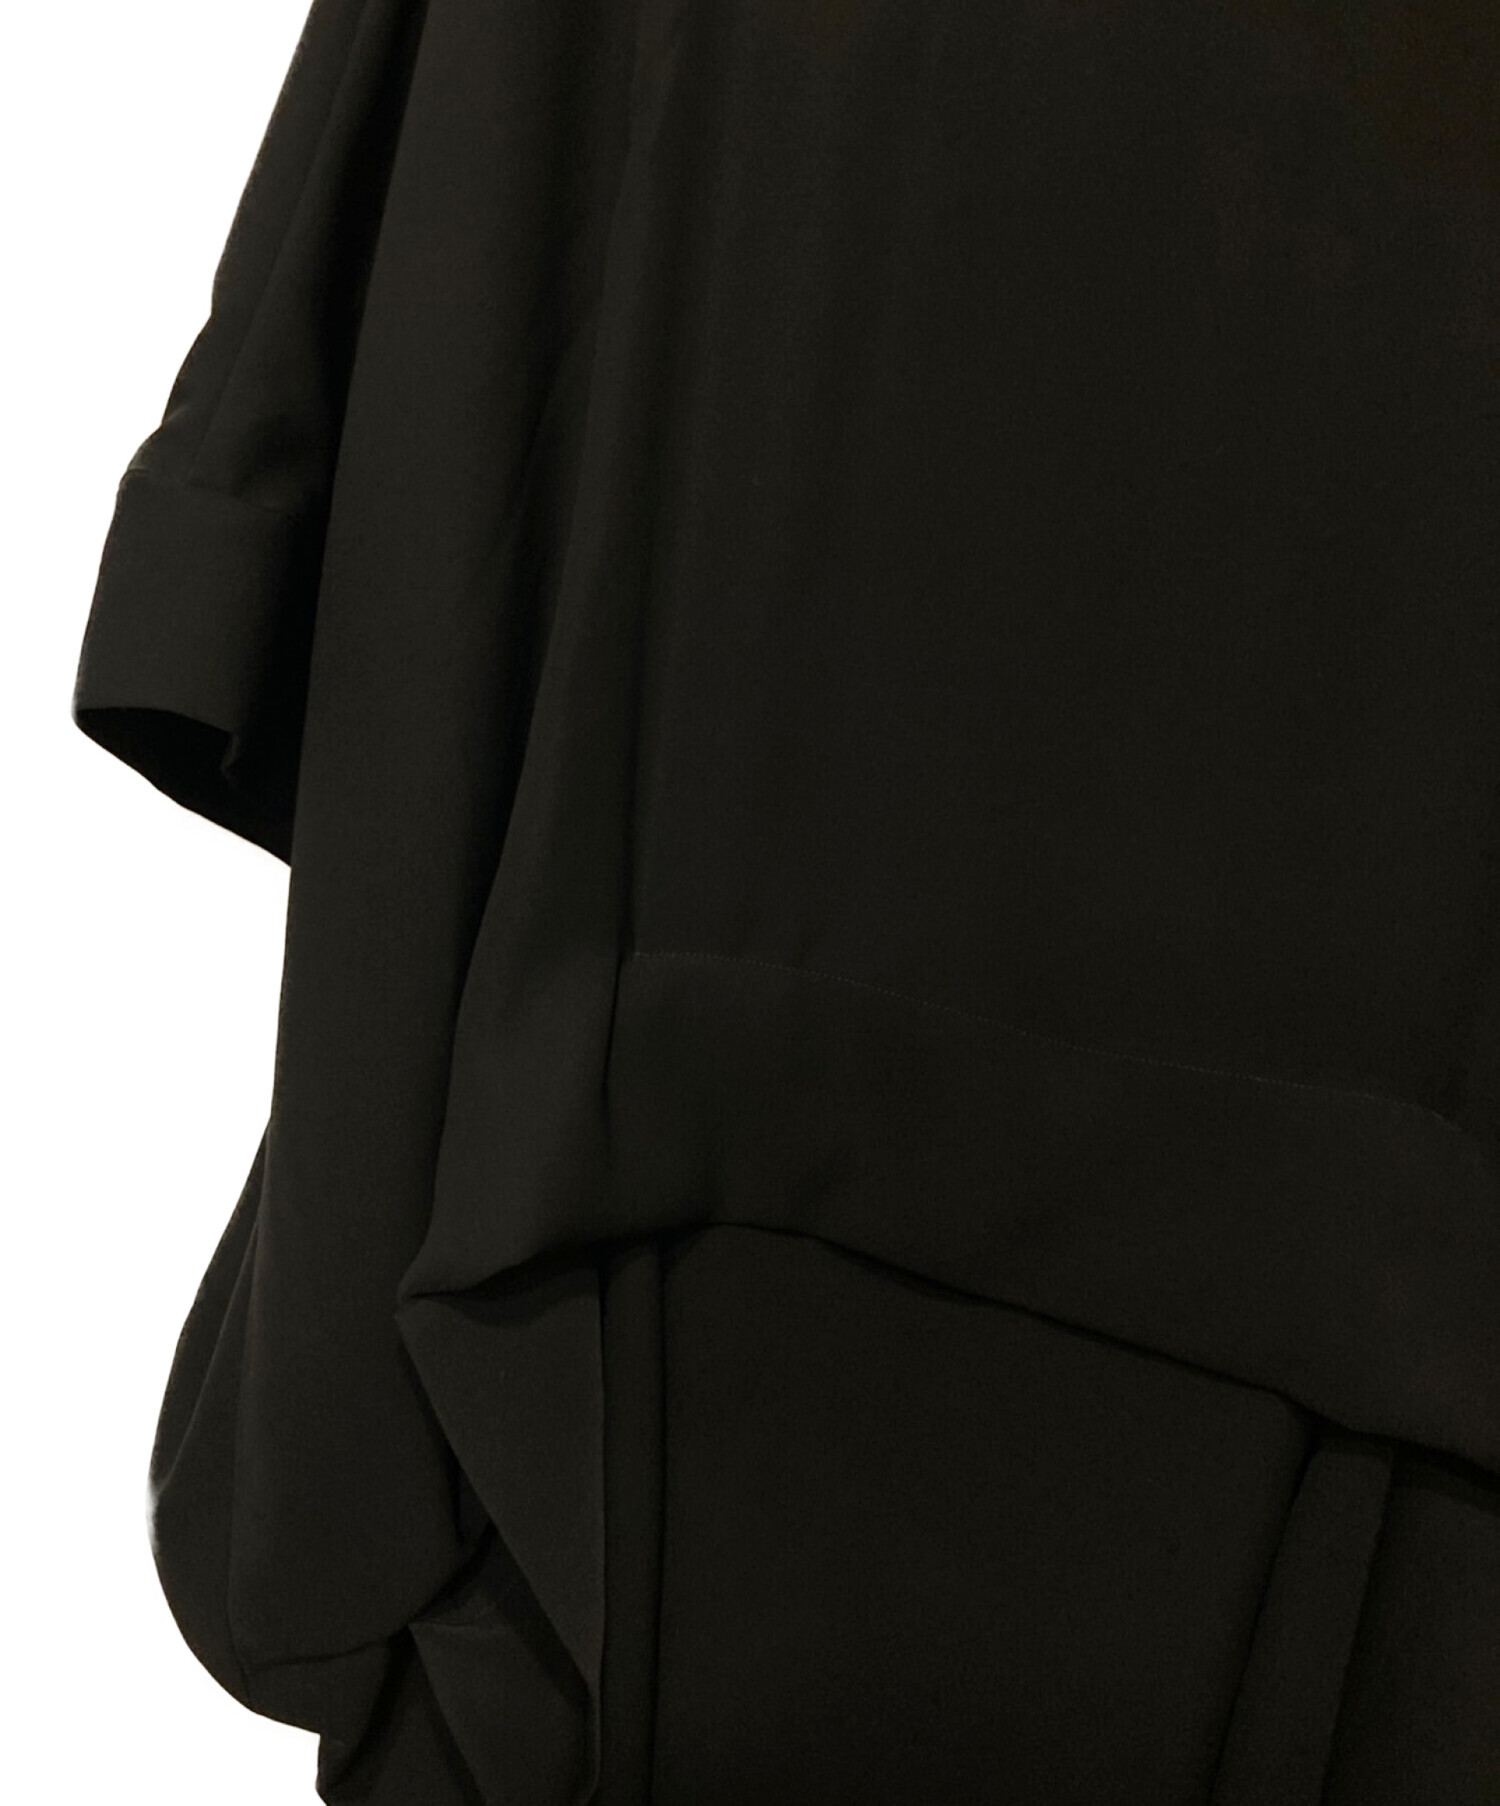 LIMI feu (リミフゥ) Double Satin Dropped Pocket Dress/ダブルサテンドロップドポケットドレス ブラック  サイズ:S